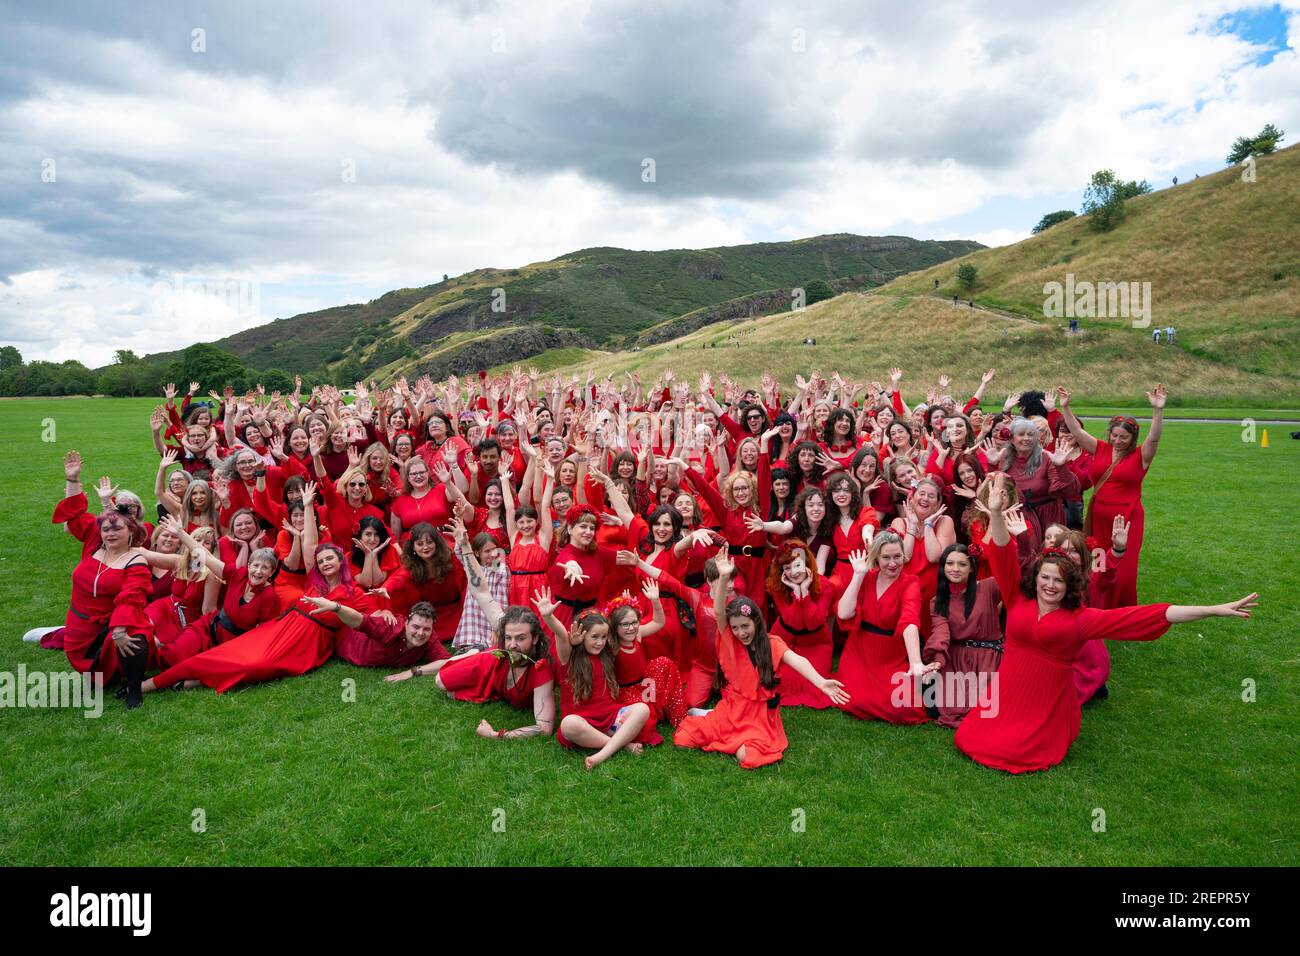 Édimbourg, Écosse, Royaume-Uni. 29 juillet 2023. Des dizaines de femmes portant des robes rouges se rassemblent à Holyrood Park pour danser et célébrer la Journée annuelle des hauteurs de Wuthering - un hommage à la musique de Kate Bush. Iain Masterton/Alamy Live News Banque D'Images